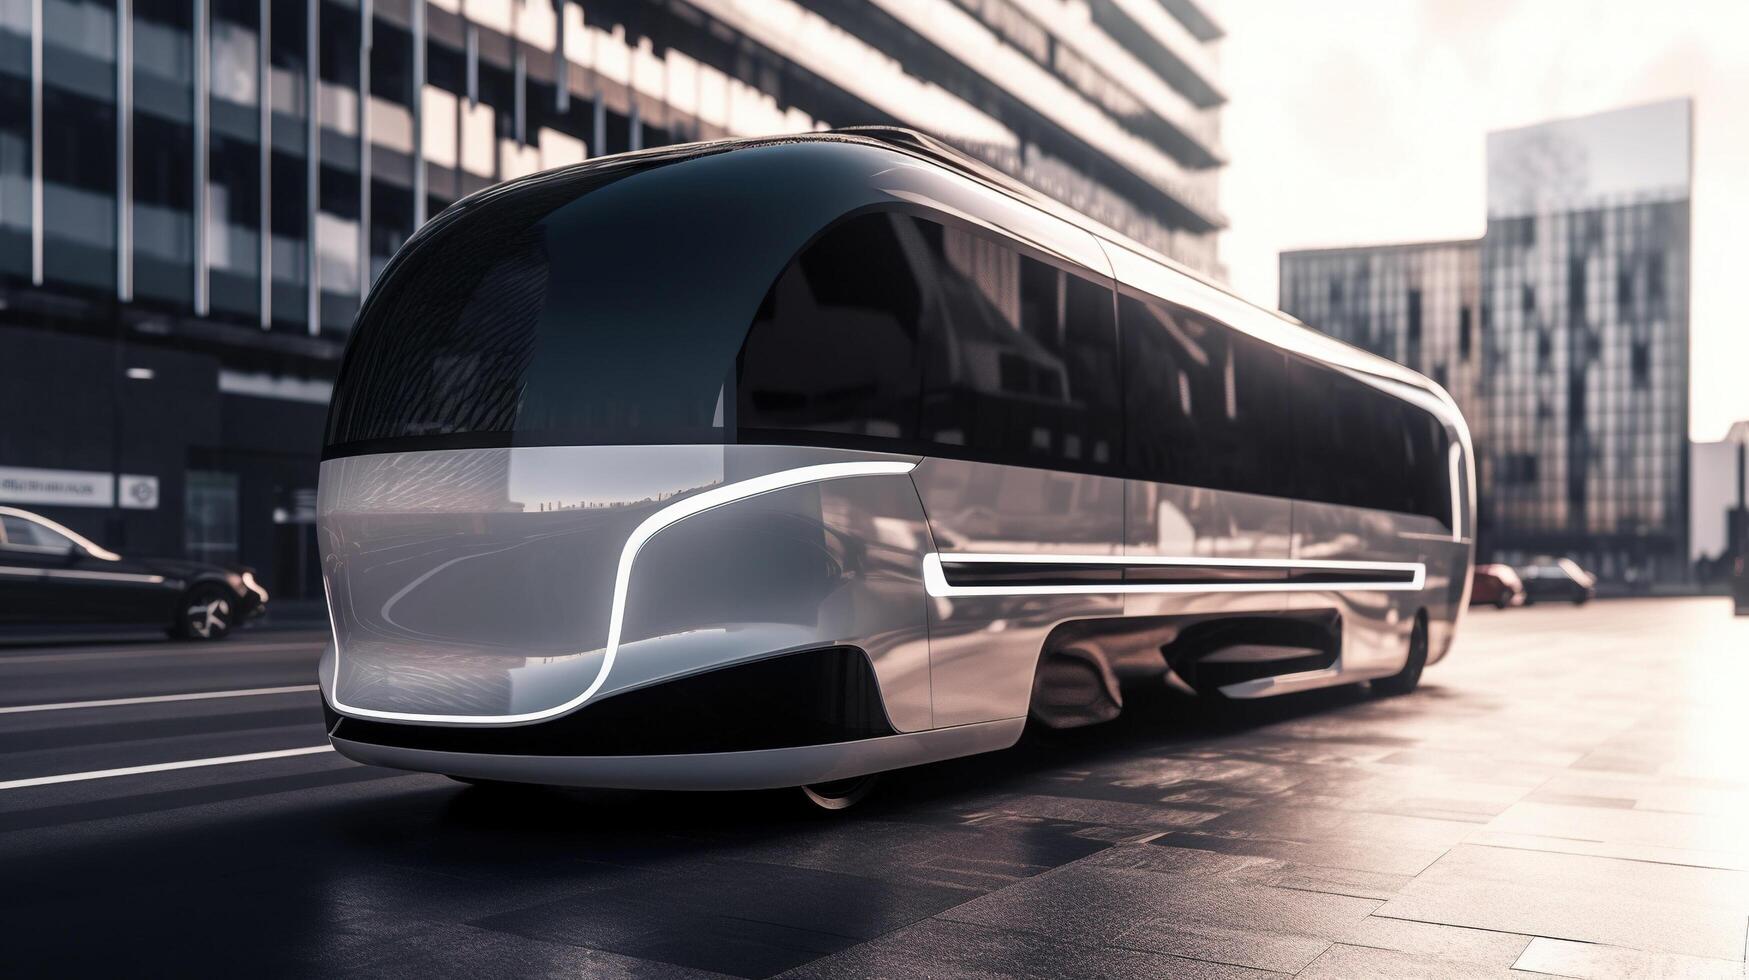 futuristic bus on the road photo